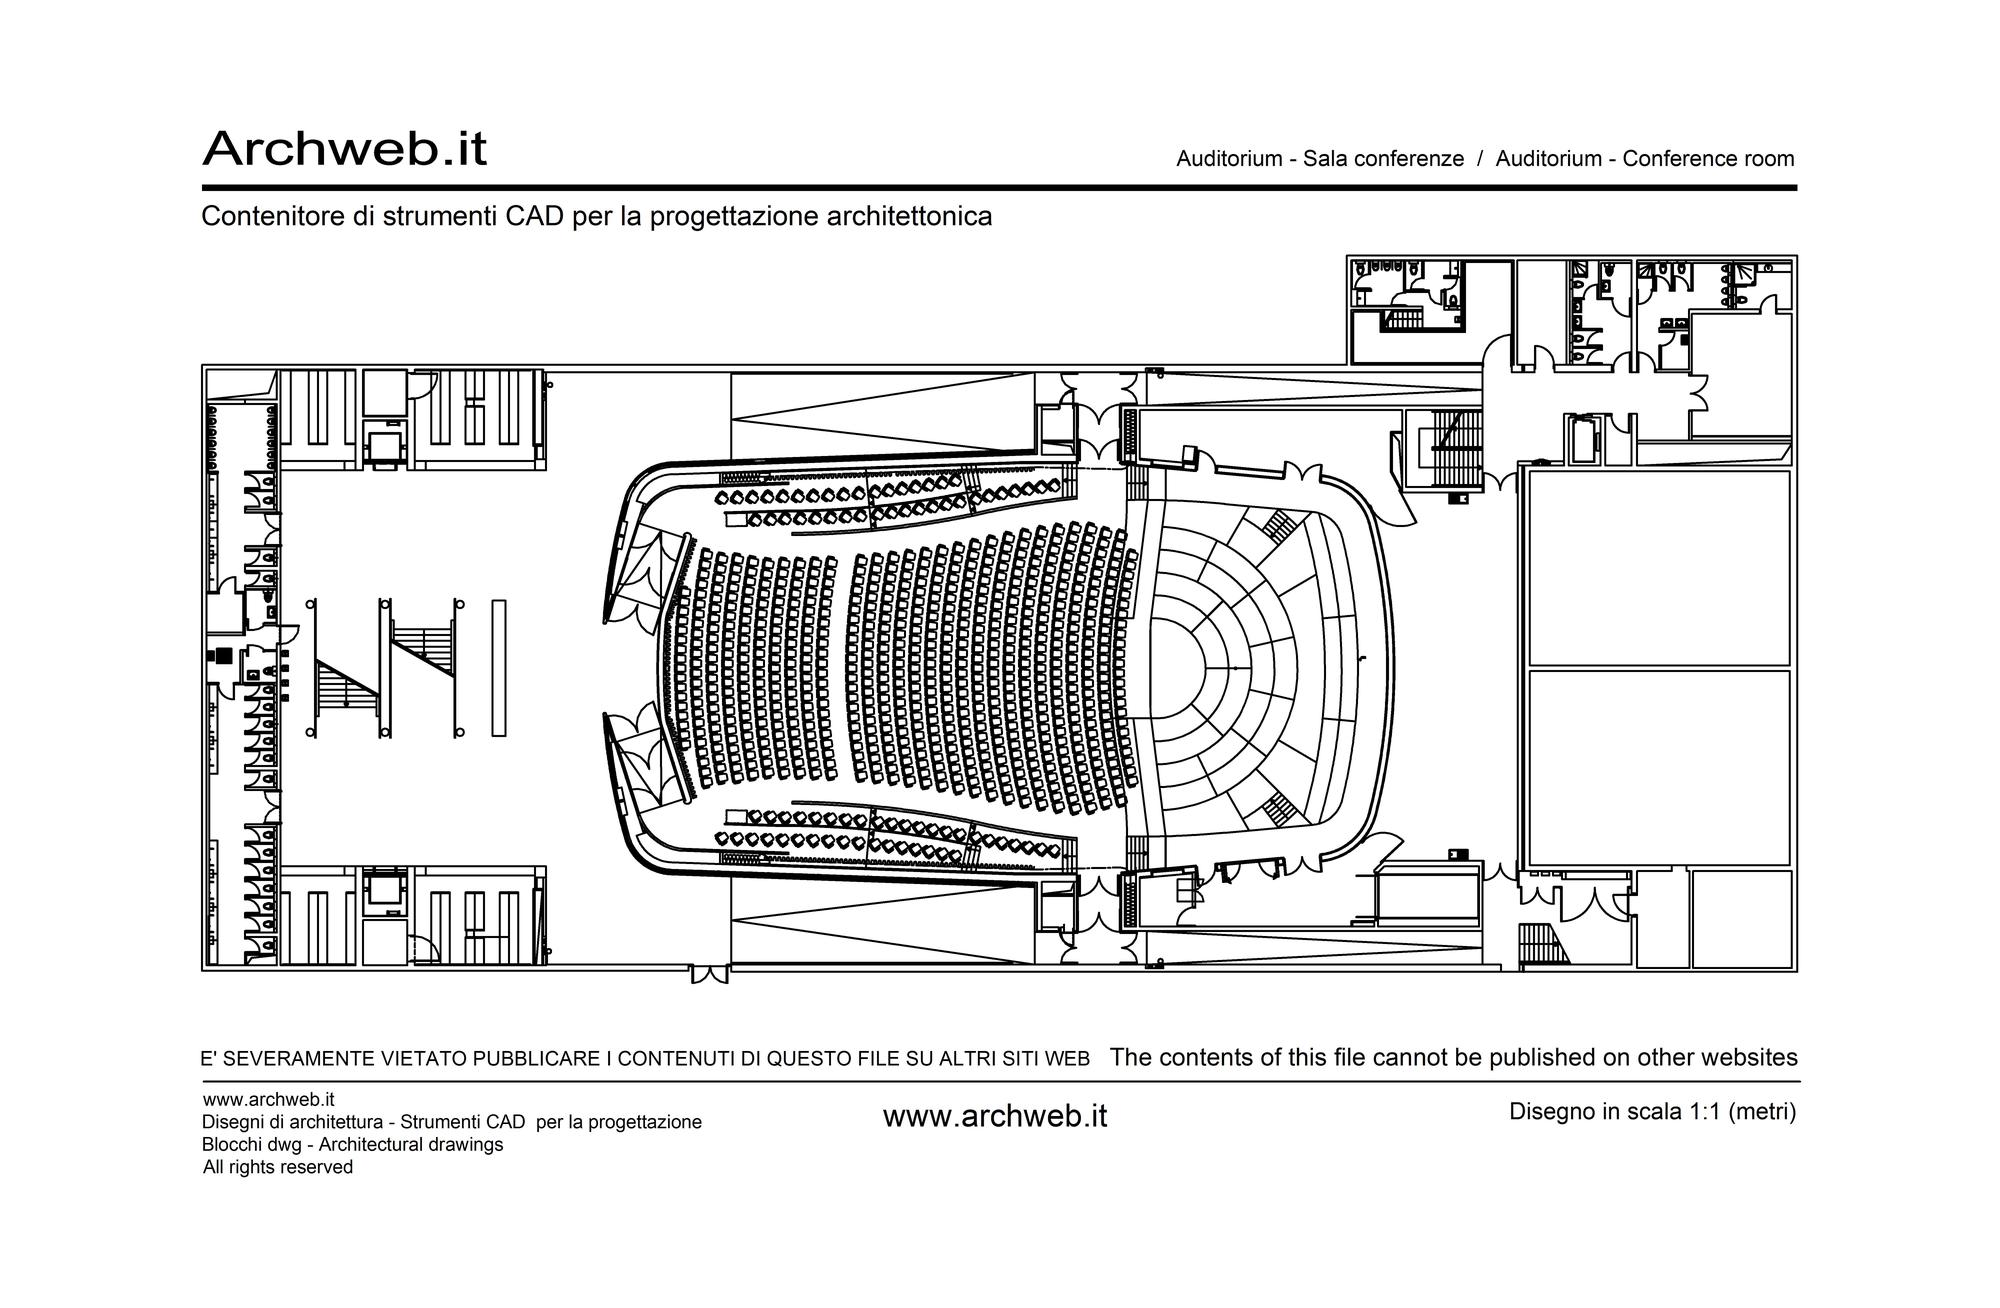 Auditorium plan 05 dwg plan.